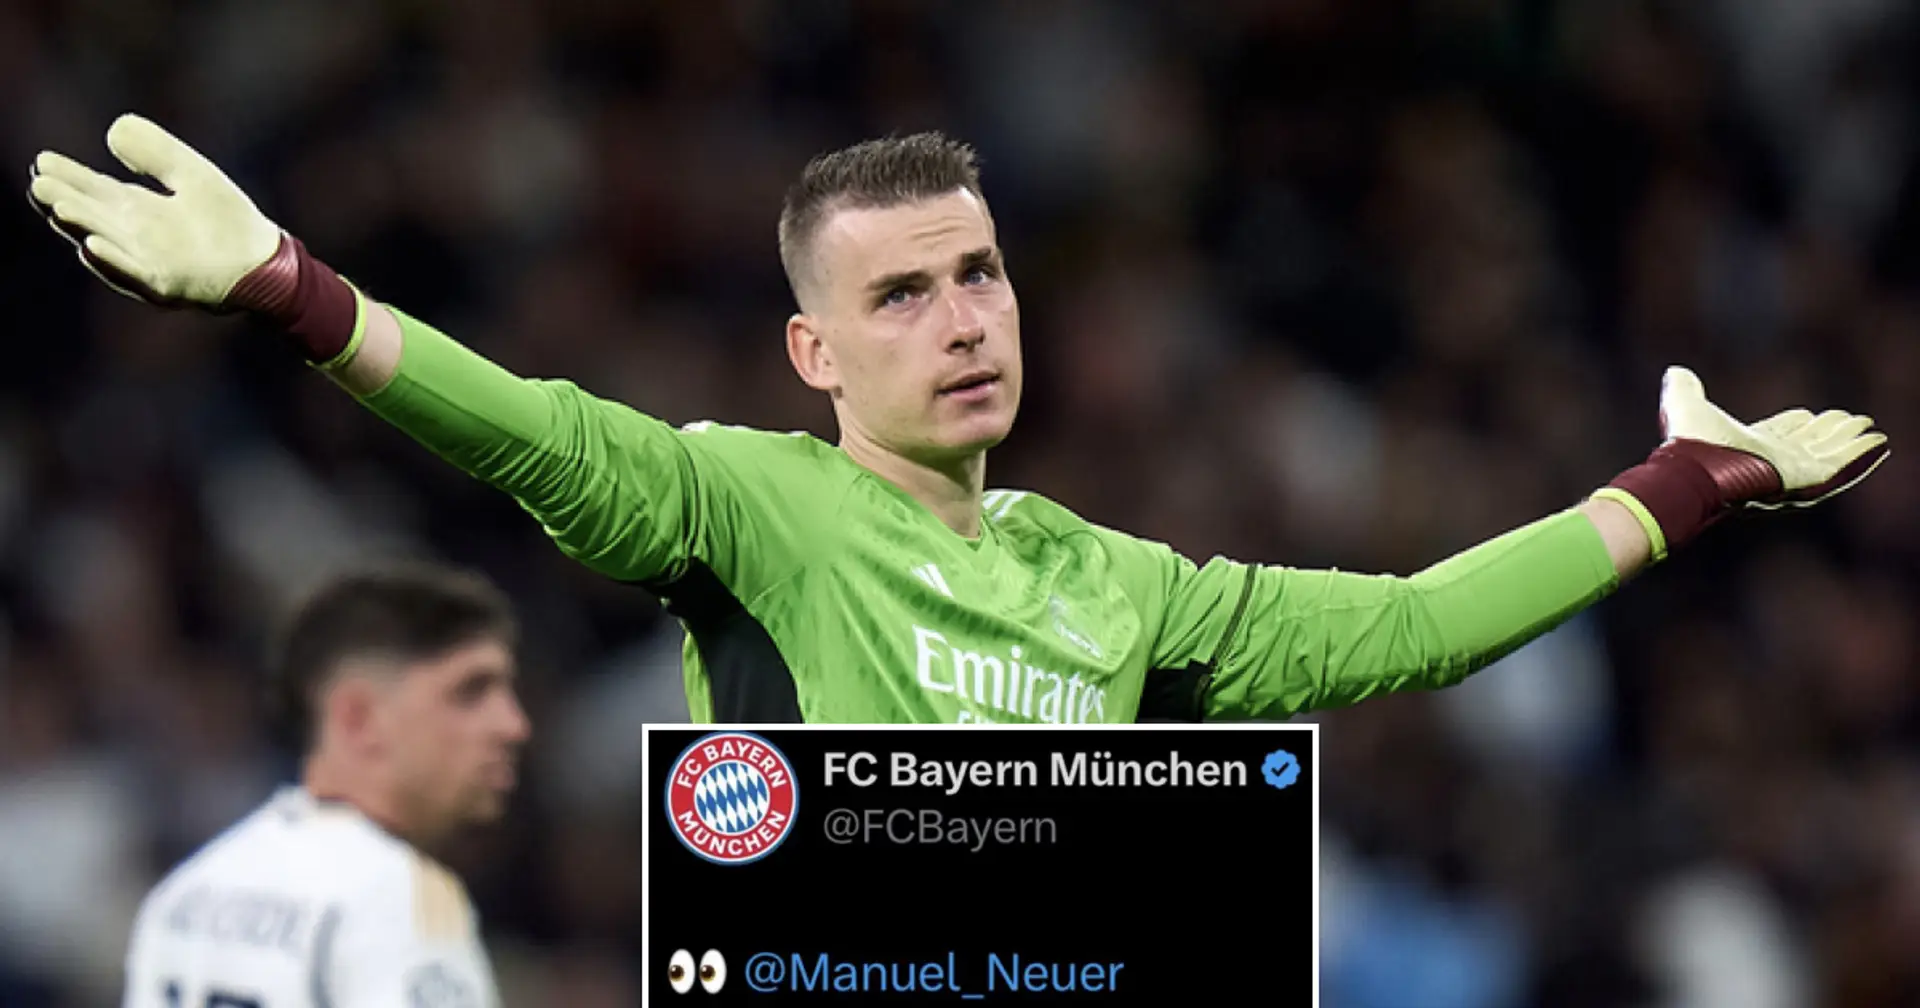 Le compte officiel du Bayern Munich a commis une gaffe monumentale avant le match contre le Real Madrid - Les Madridistas vont adorer ça